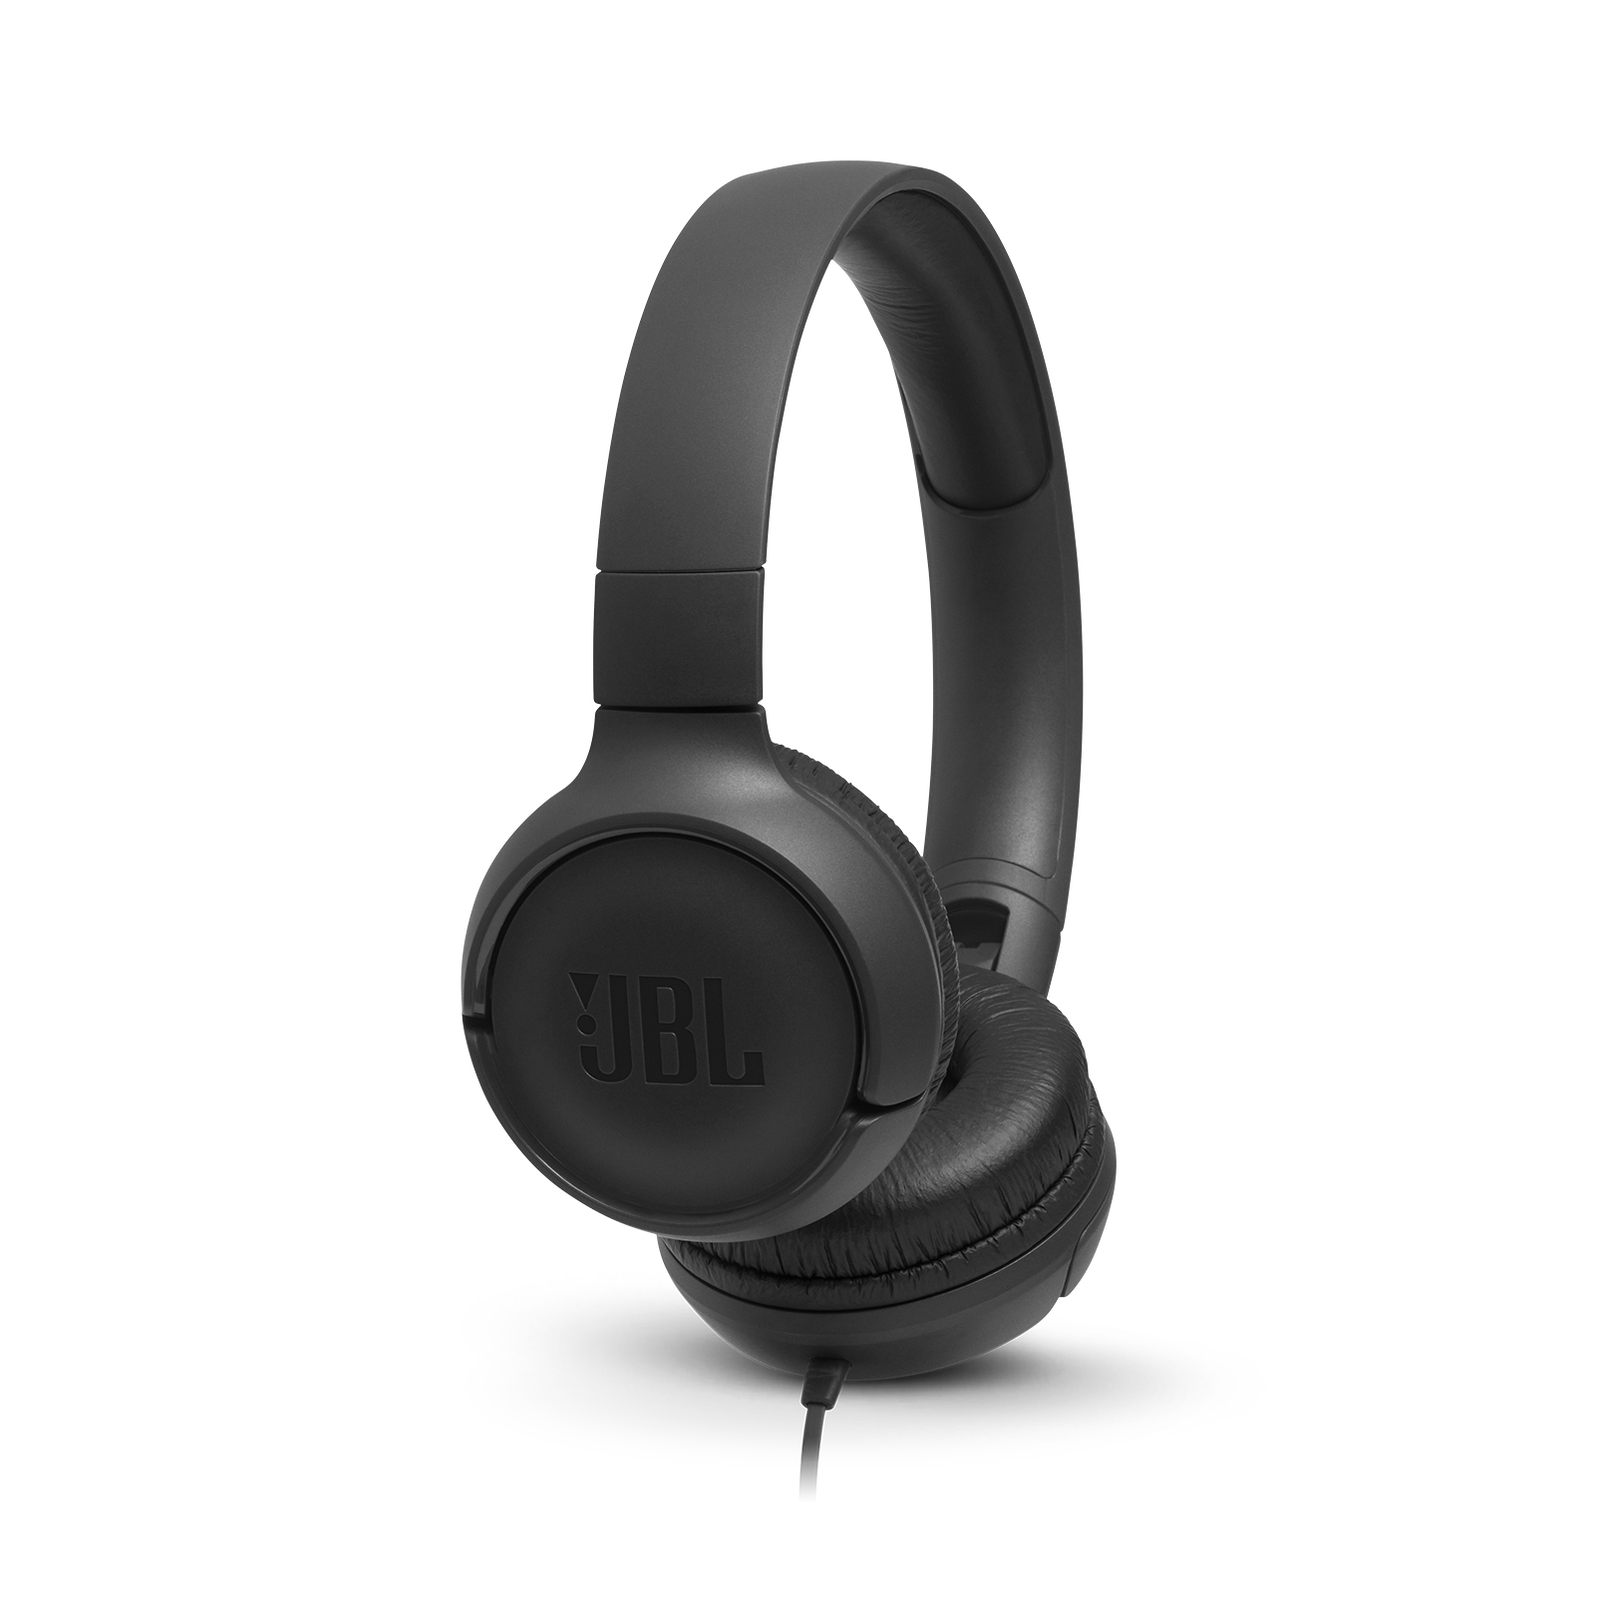 JBL Tune 500 Black On-Ear Headphones